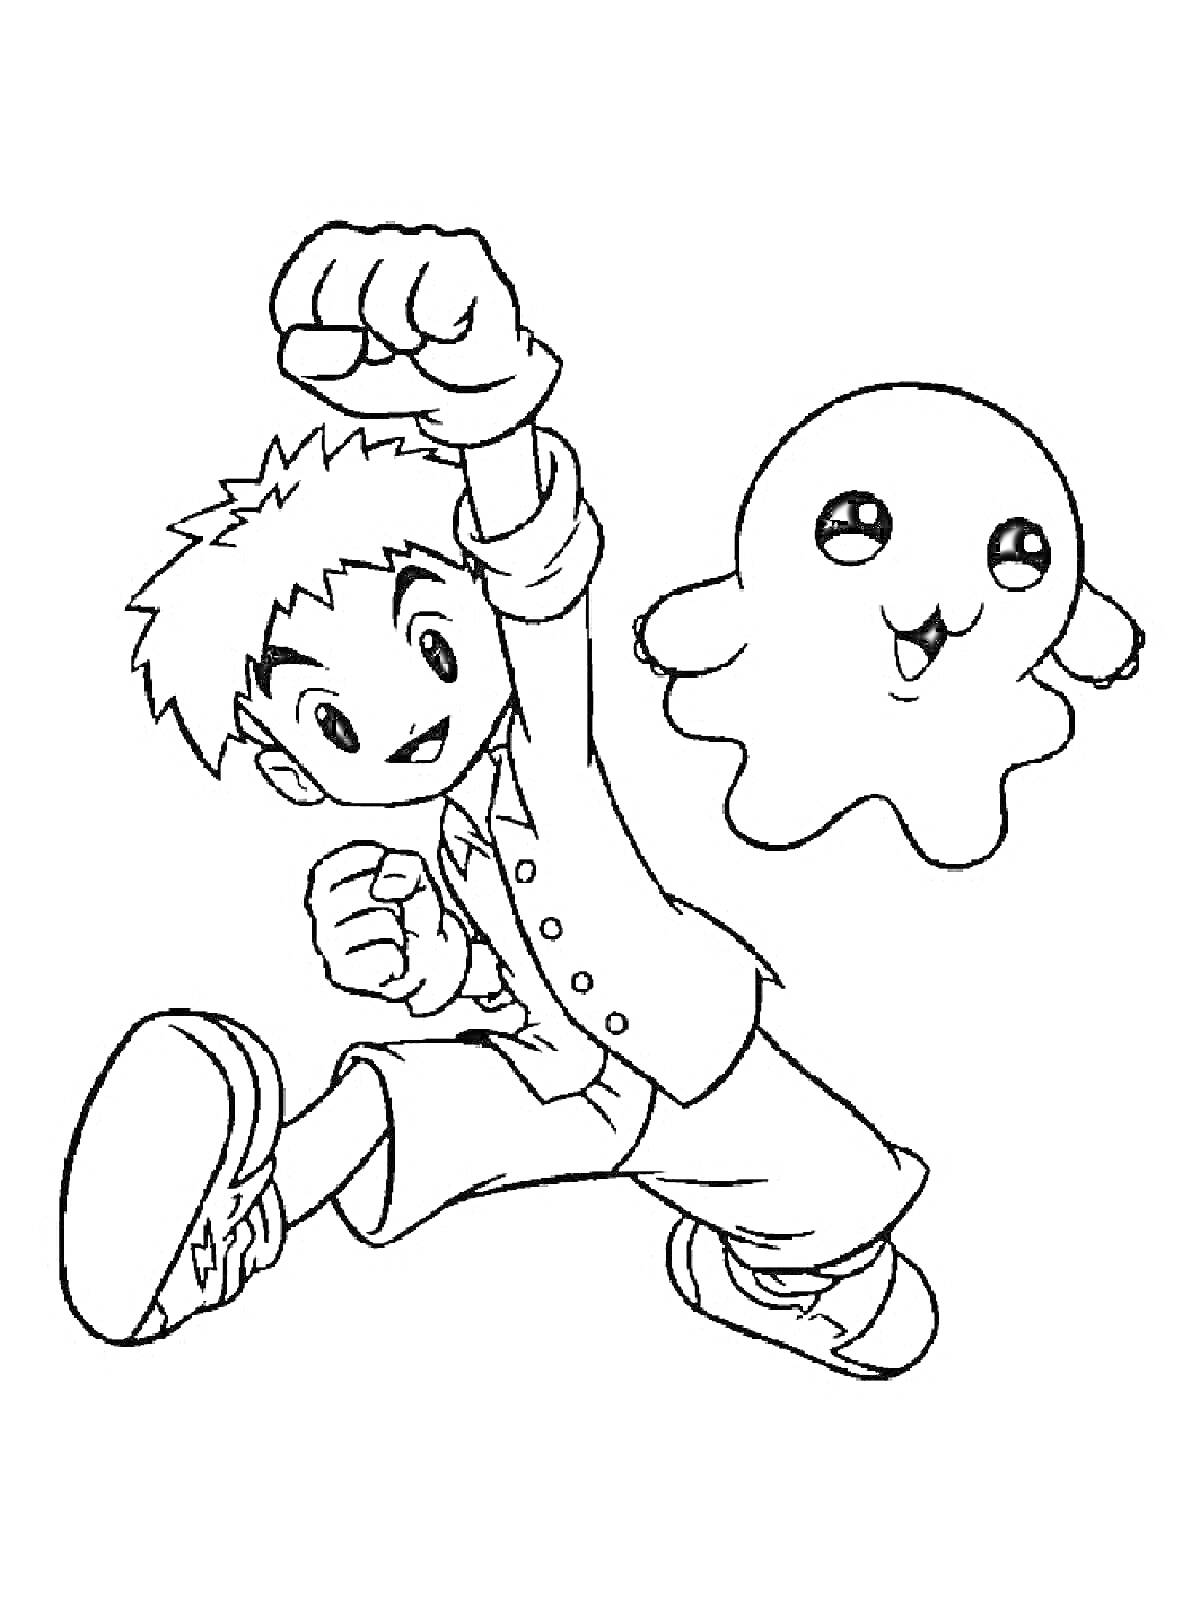 Раскраска Мальчик и Дигимон в прыжке с поднятым кулаком